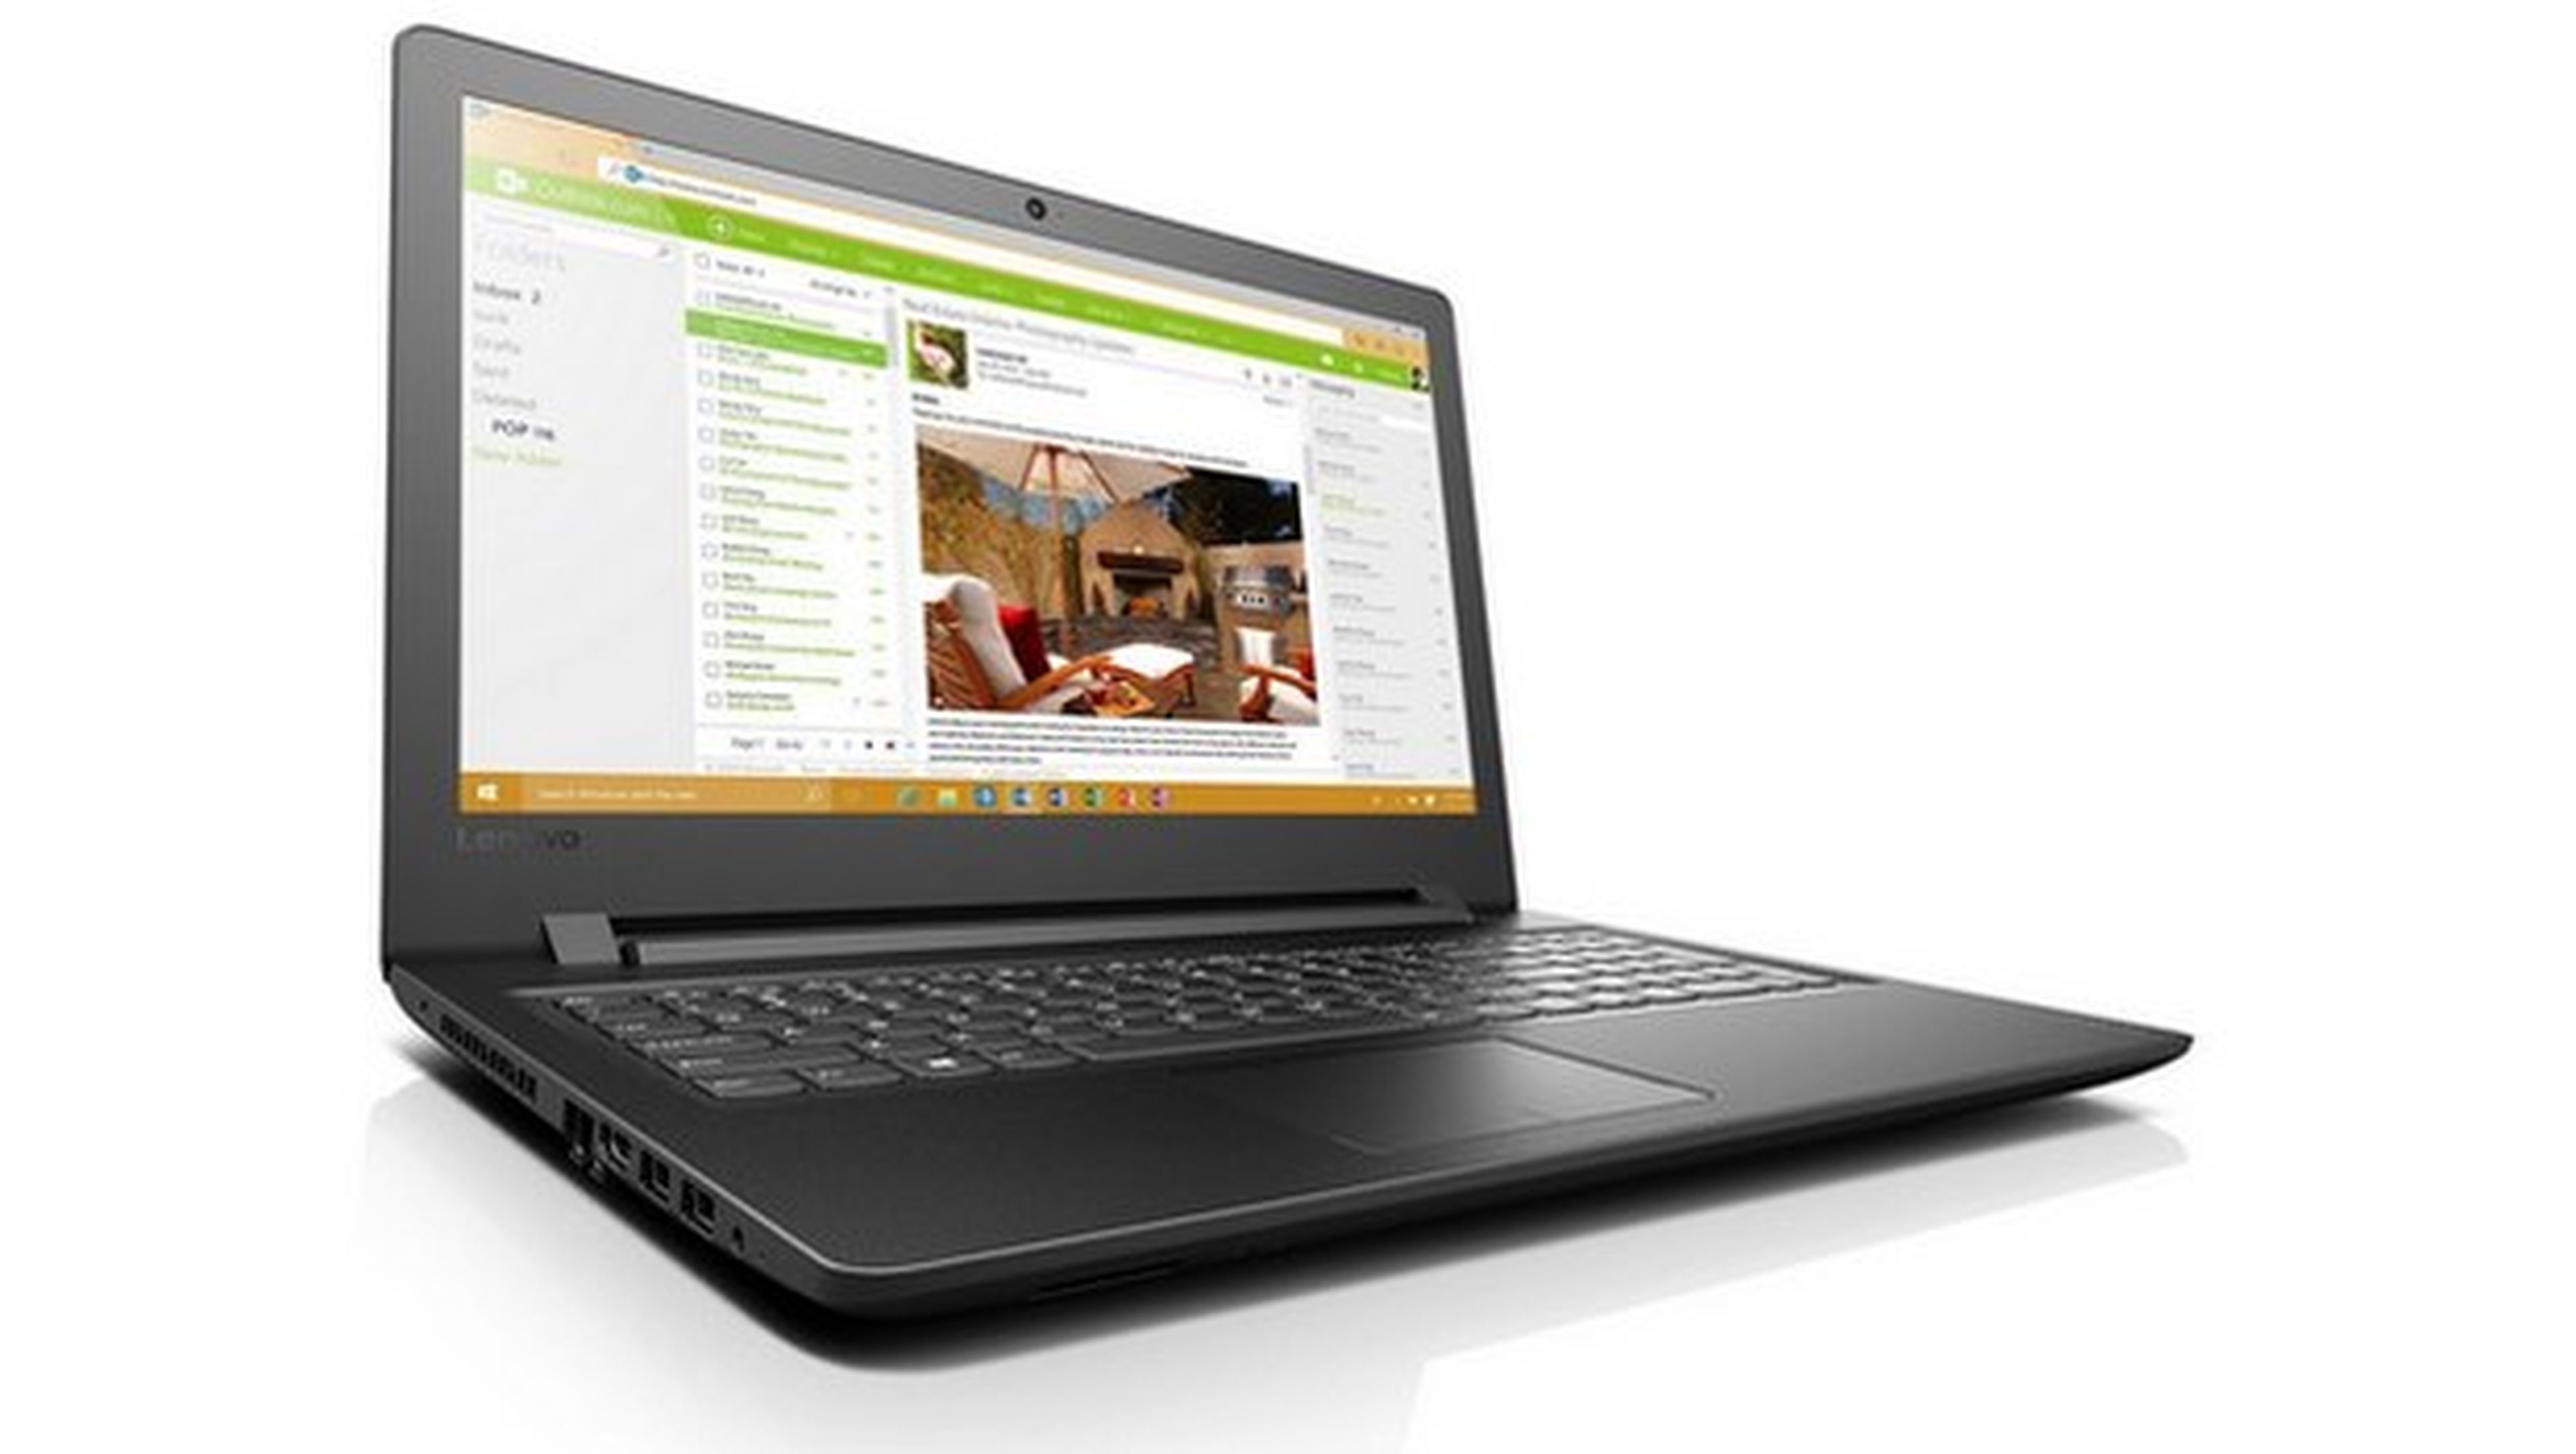 Mejores ofertas para comprar un ordenador portátil en Black Friday